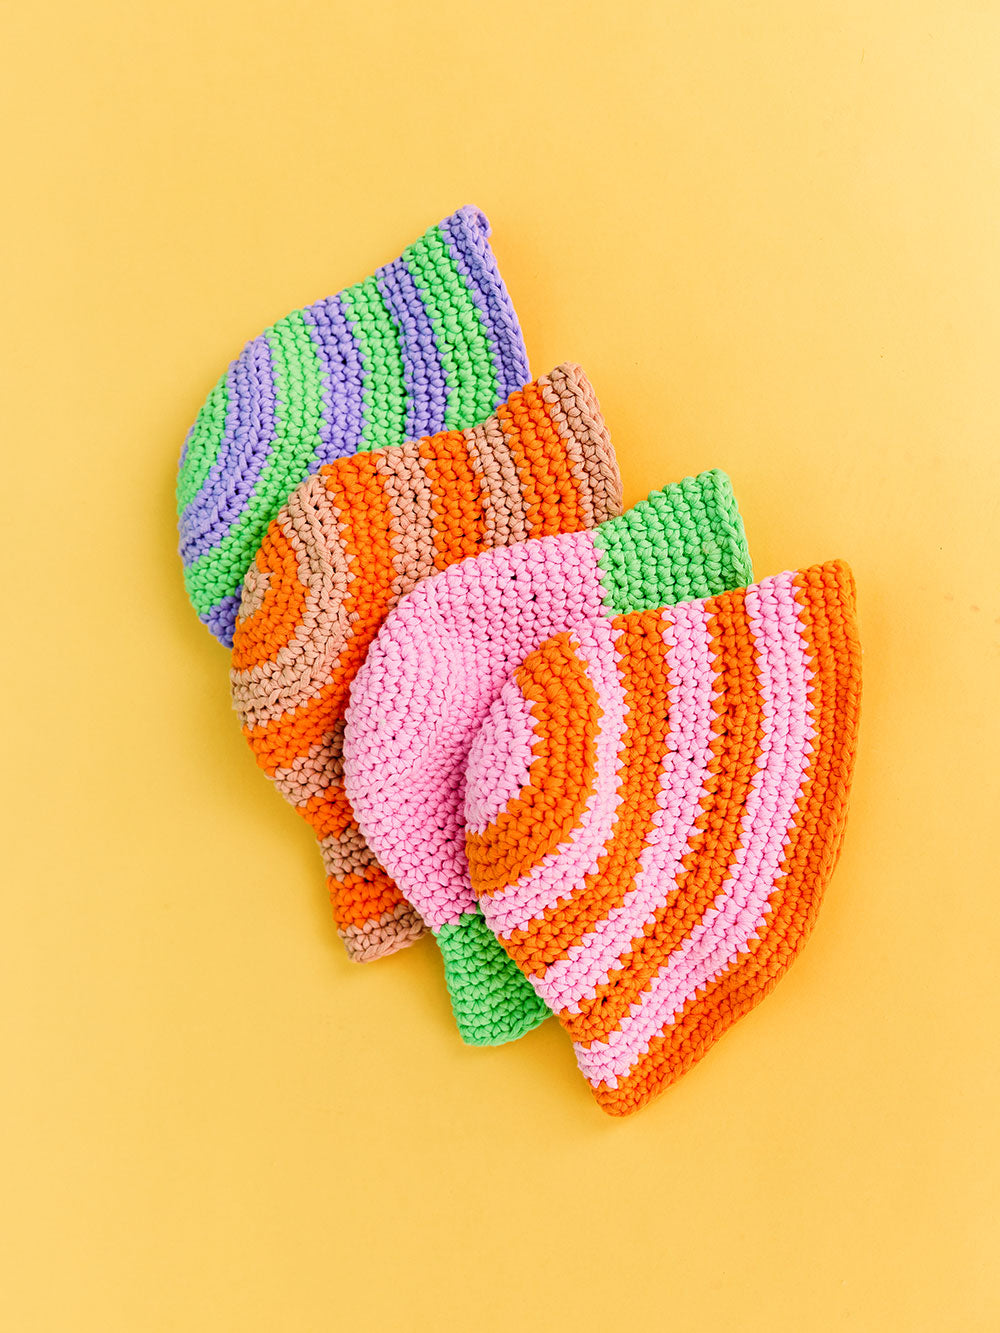 Besties Bundles - two crochet bucket hat kits